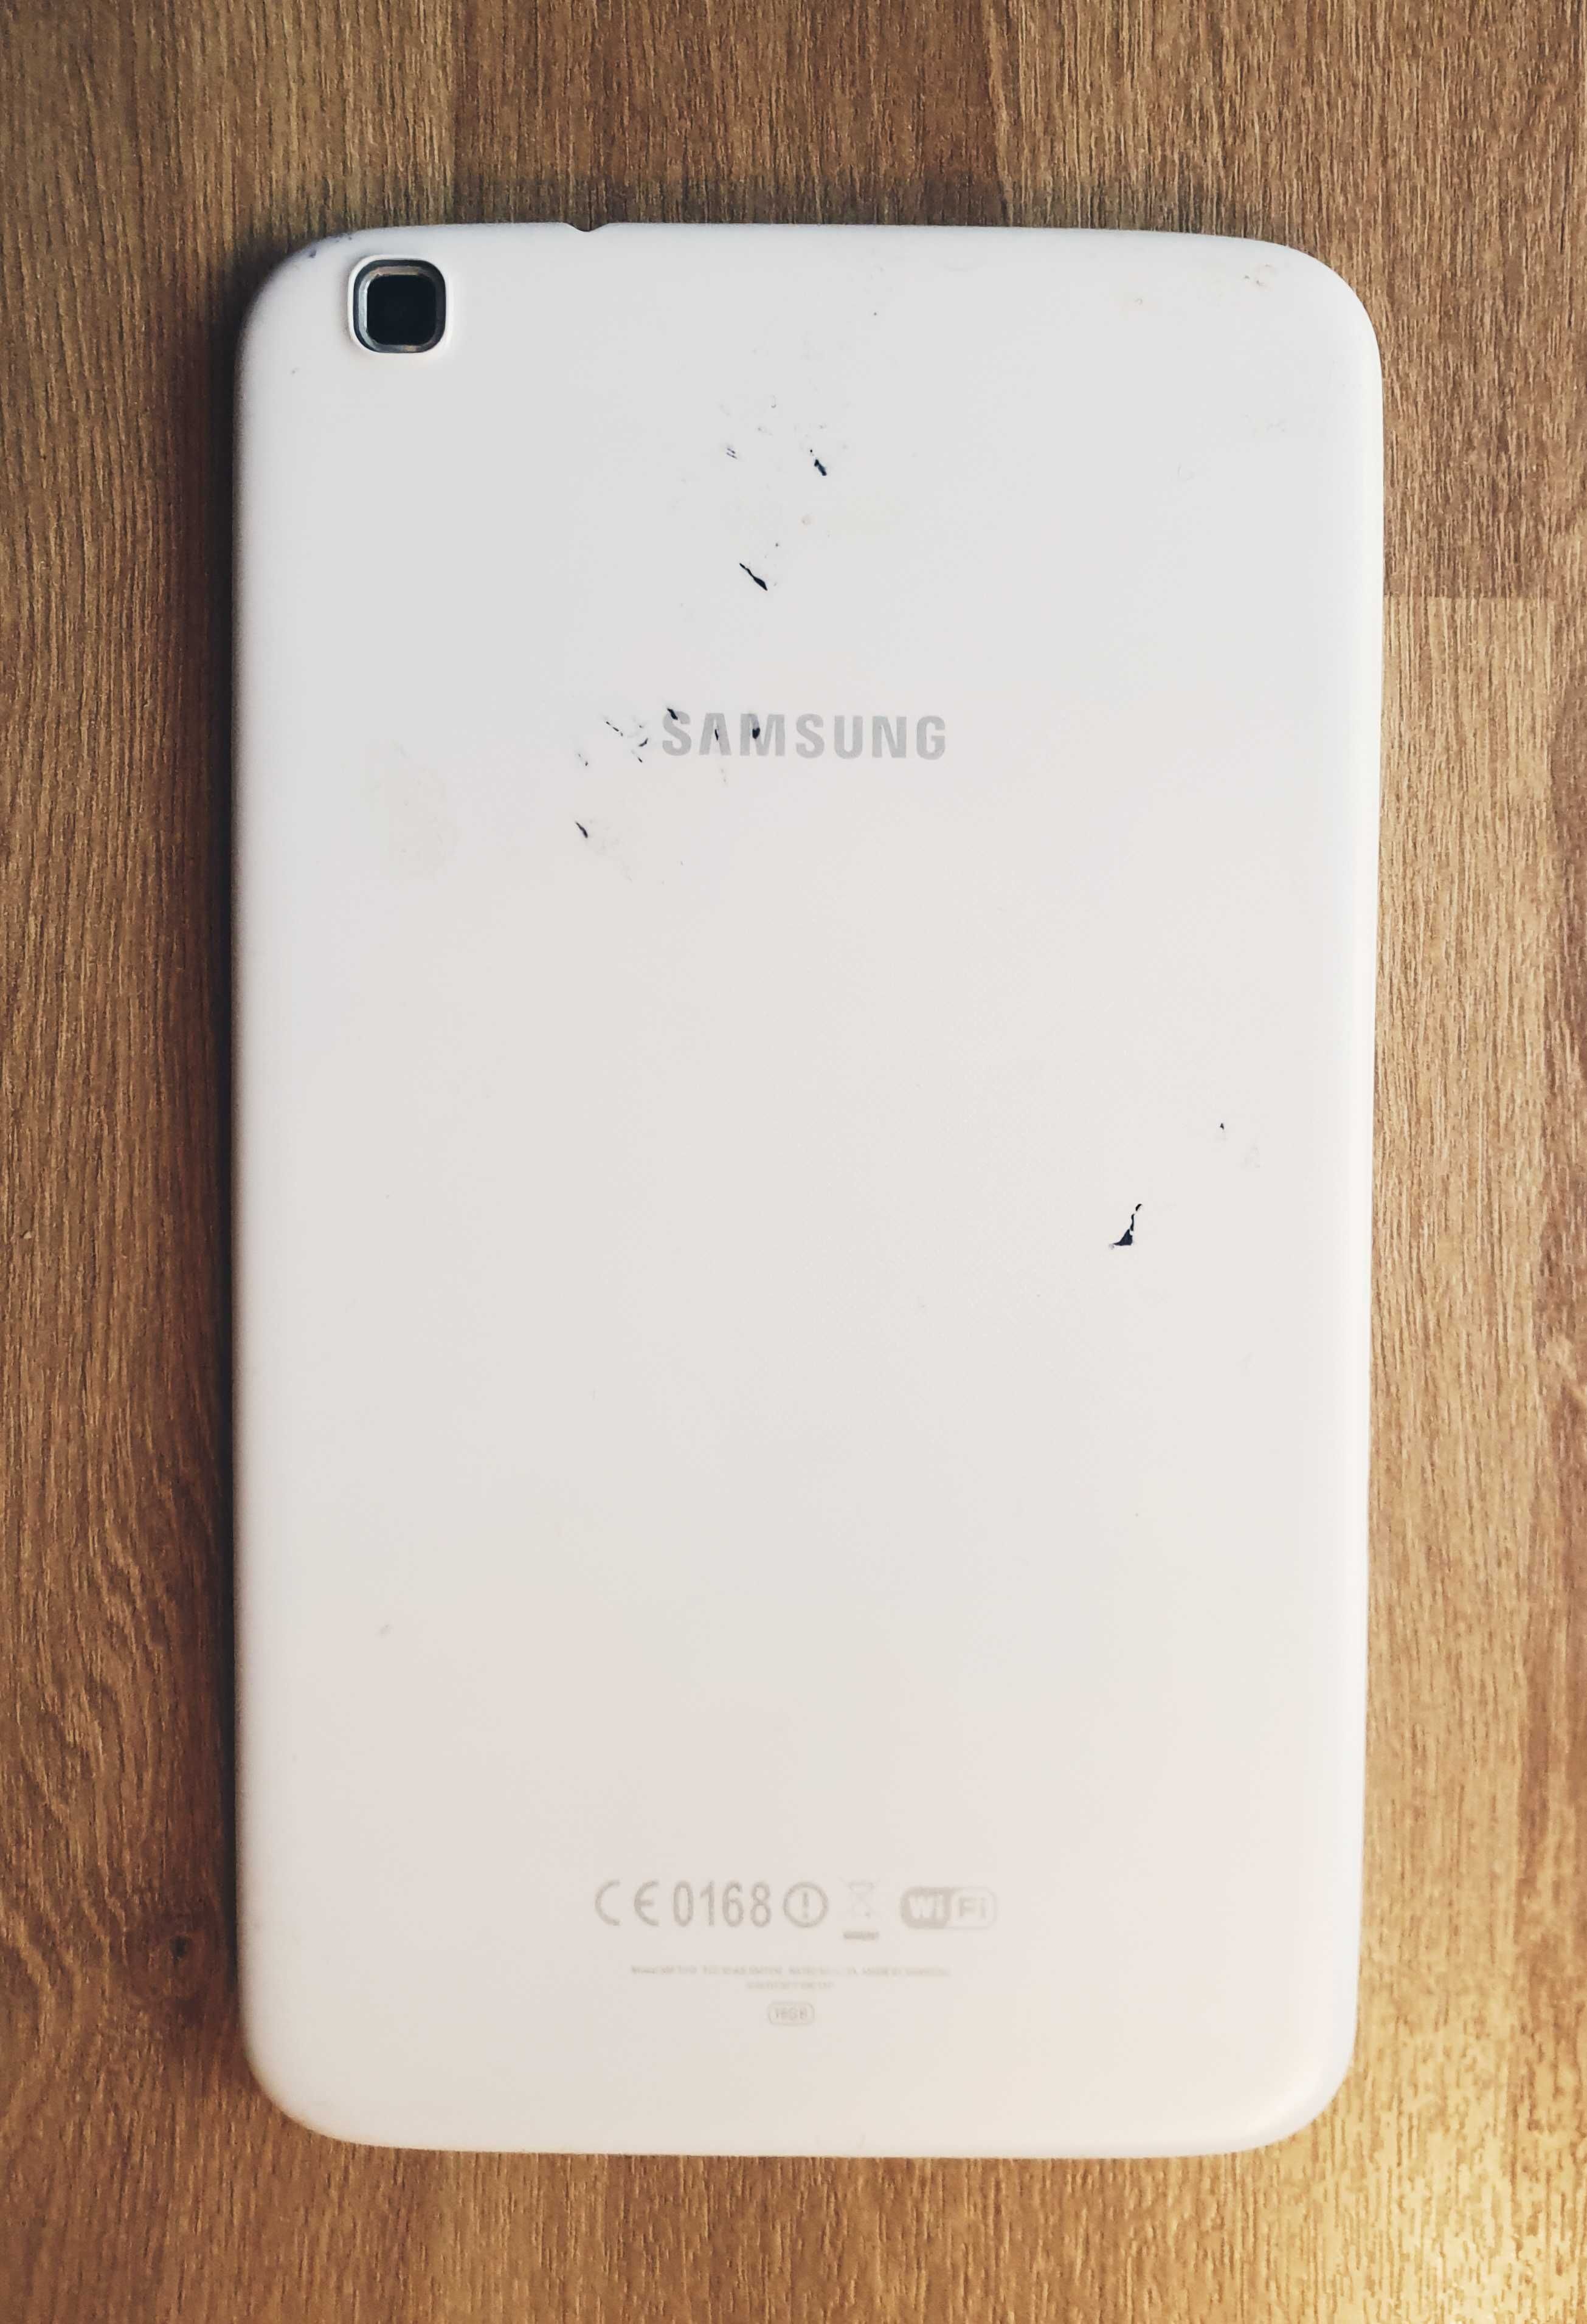 Samsung Galaxy TAB 3 - CE0168